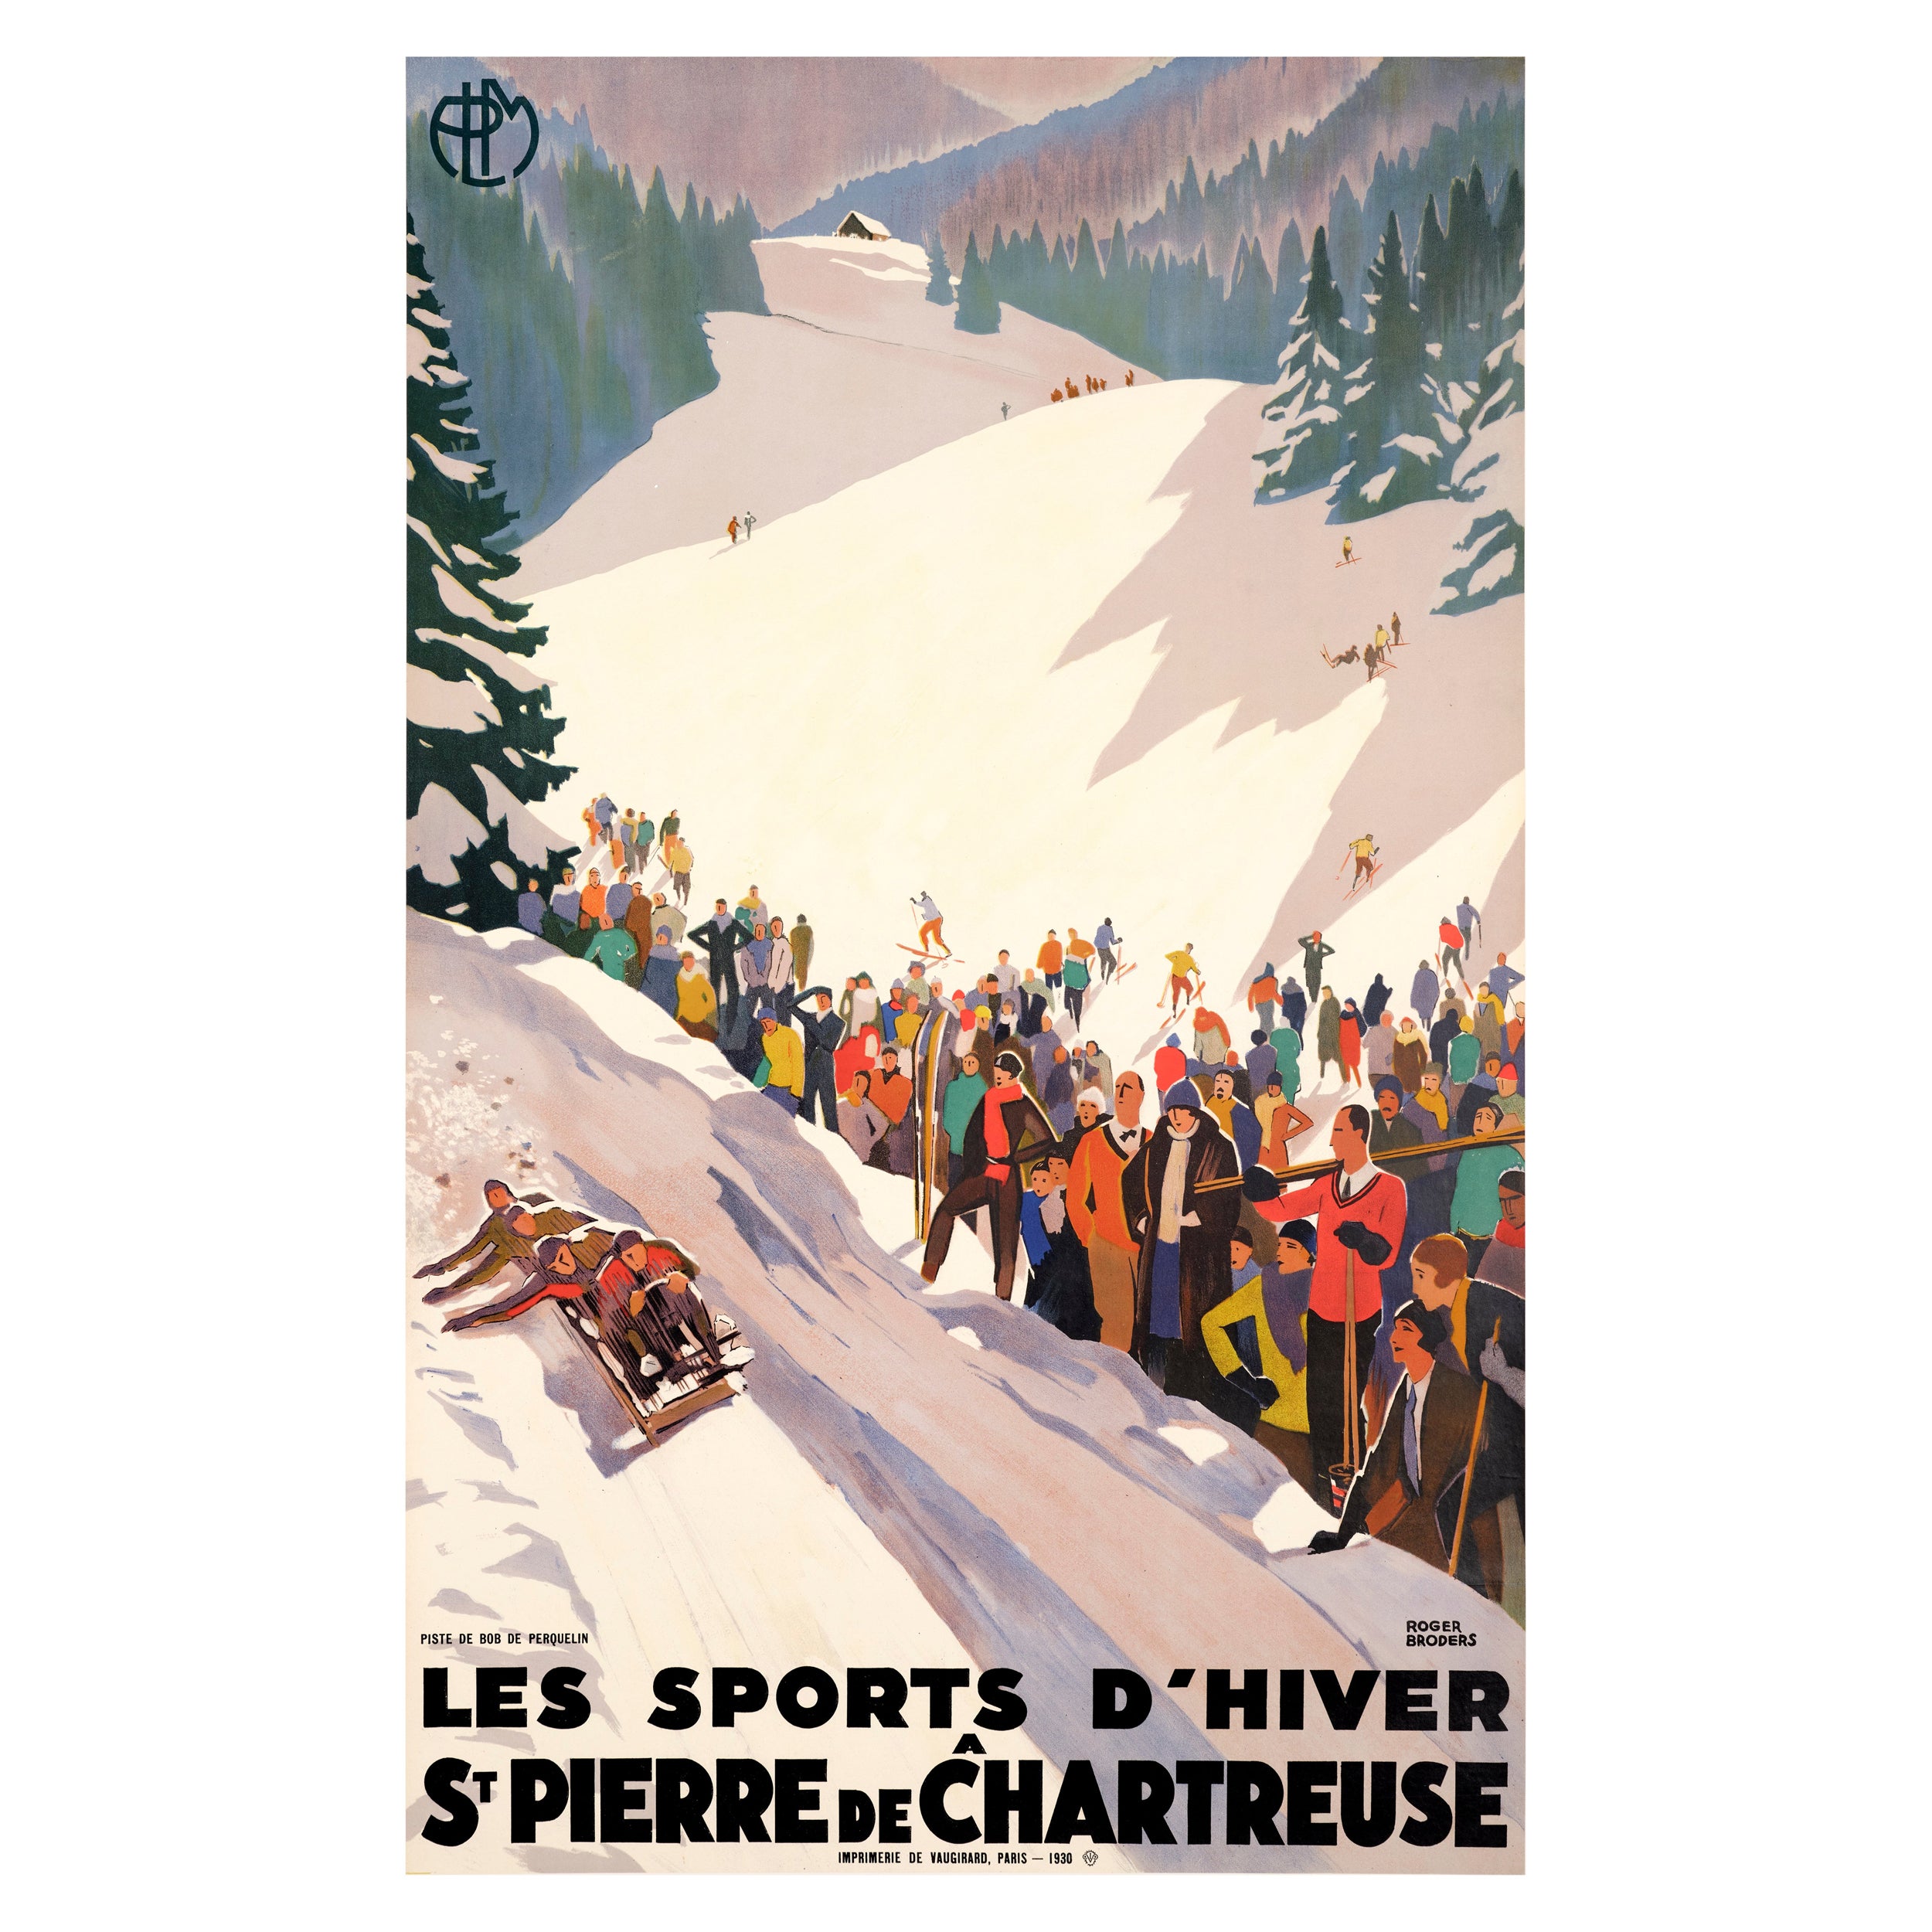 Broders, Original Art-Déco-Poster, Wintersport, Bobsleigh-Skifahren, Art déco, 1930